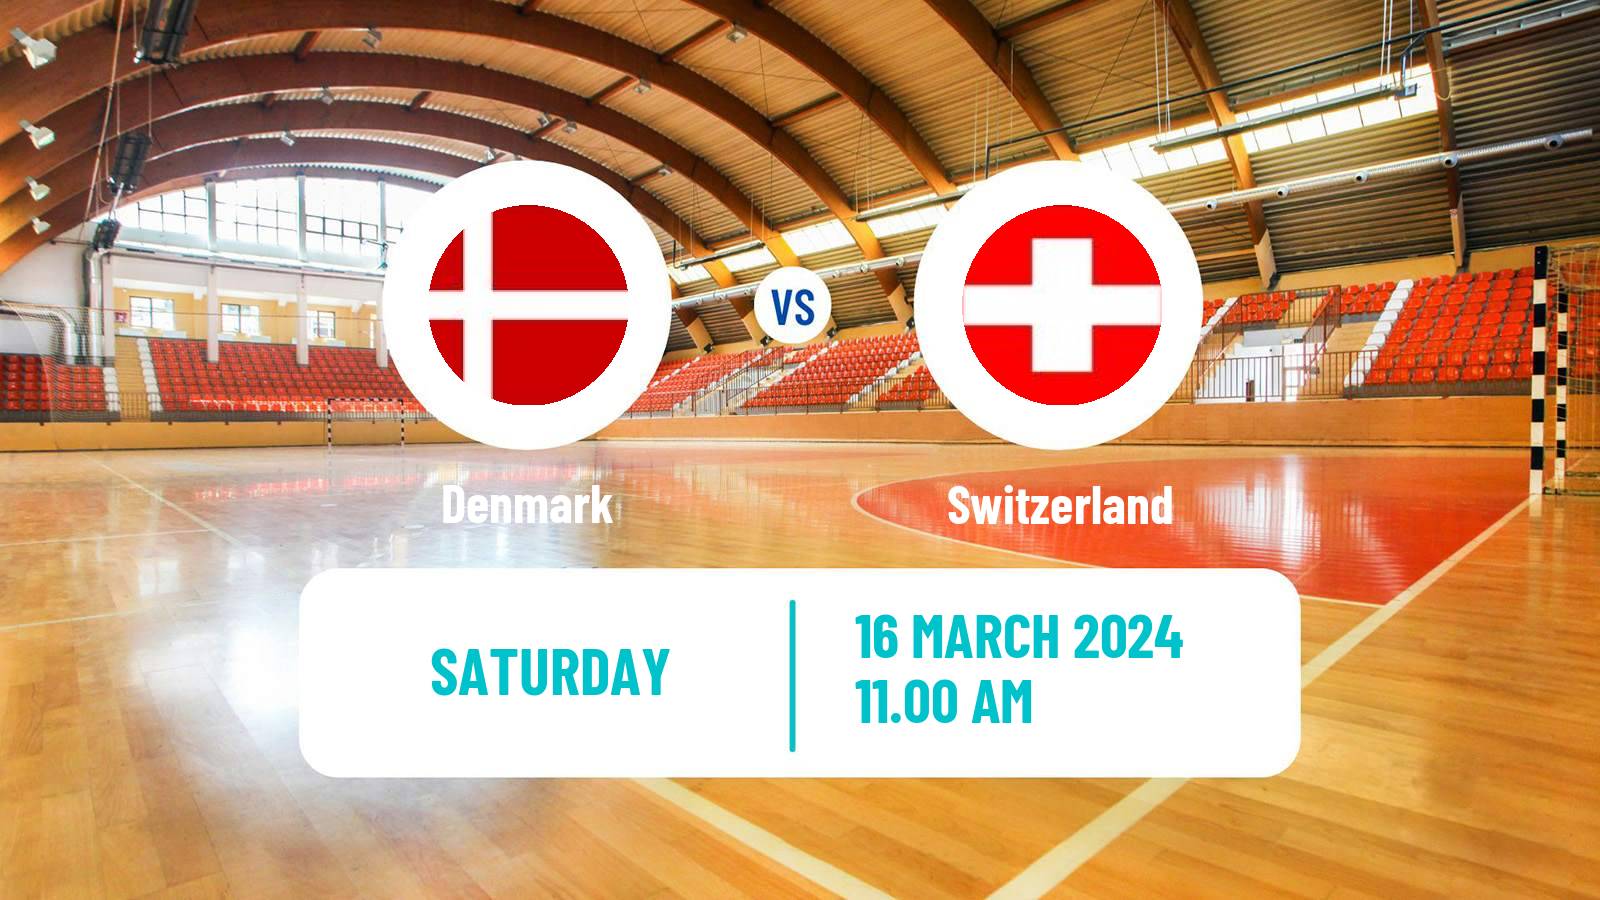 Handball Friendly International Handball Denmark - Switzerland